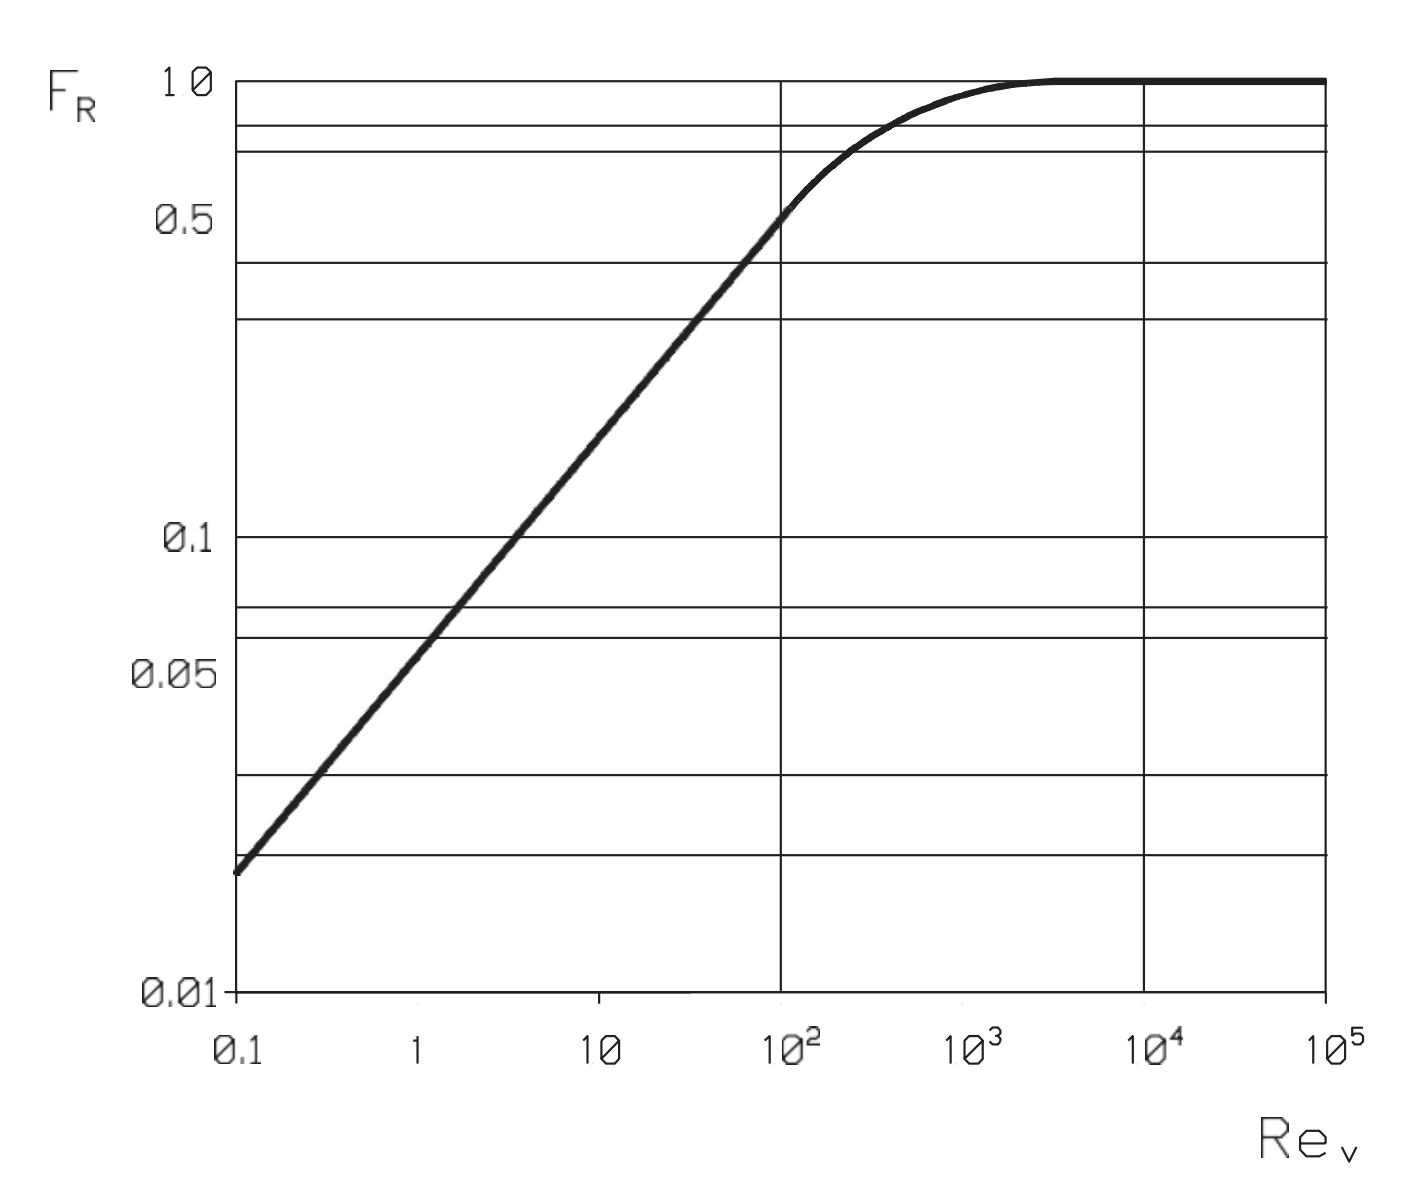 Figure 38. Reynolds number factor (FR) for liquid flow.